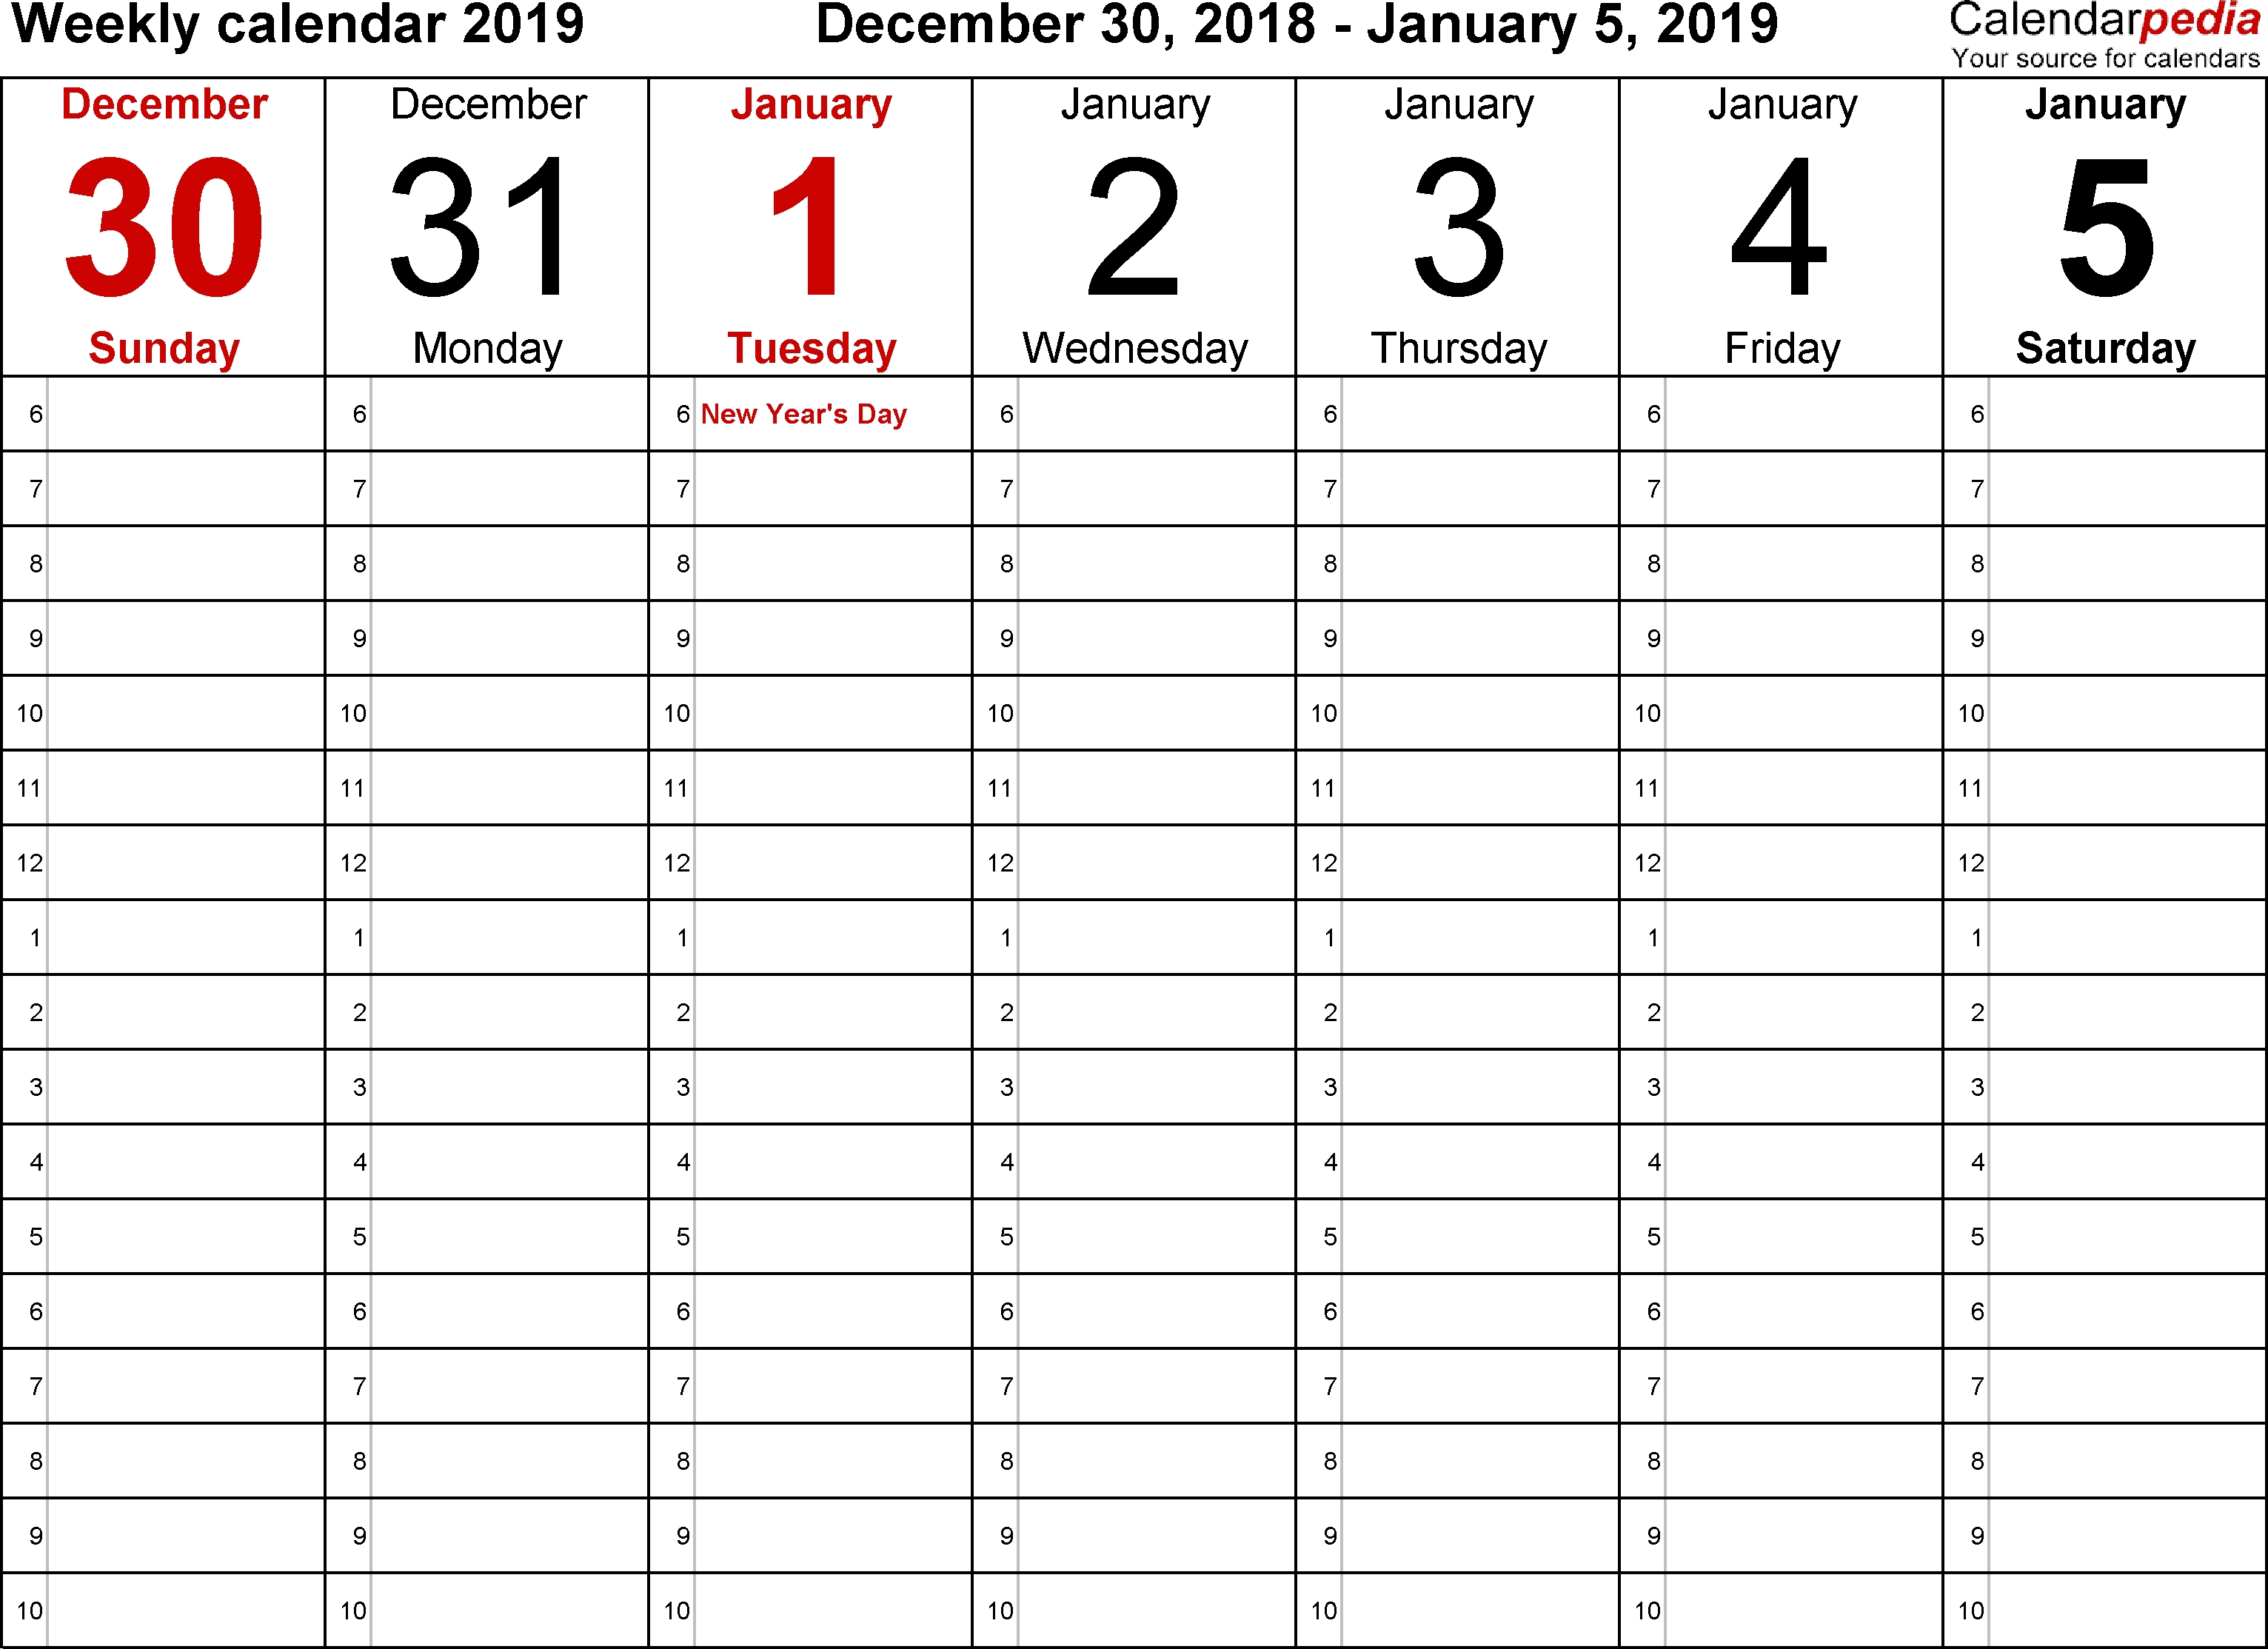 Weekly Calendar 2019 For Word - 12 Free Printable Templates regarding Blank Lined Weekly Printable Calendar